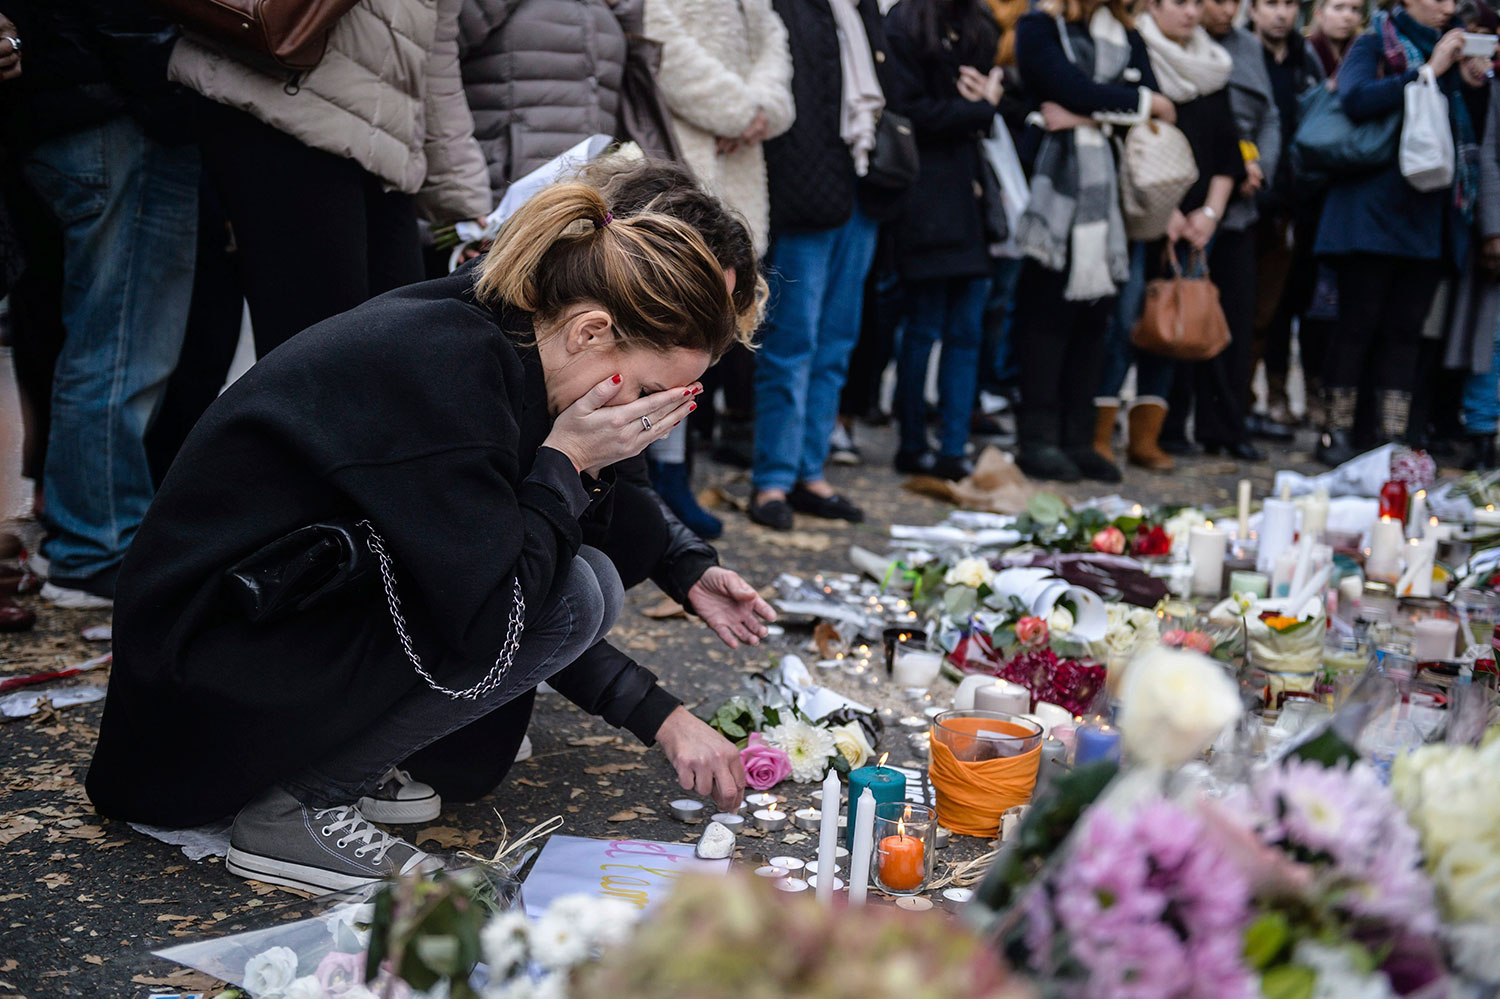  Ministro francés advierte que habrá “otros atentados”